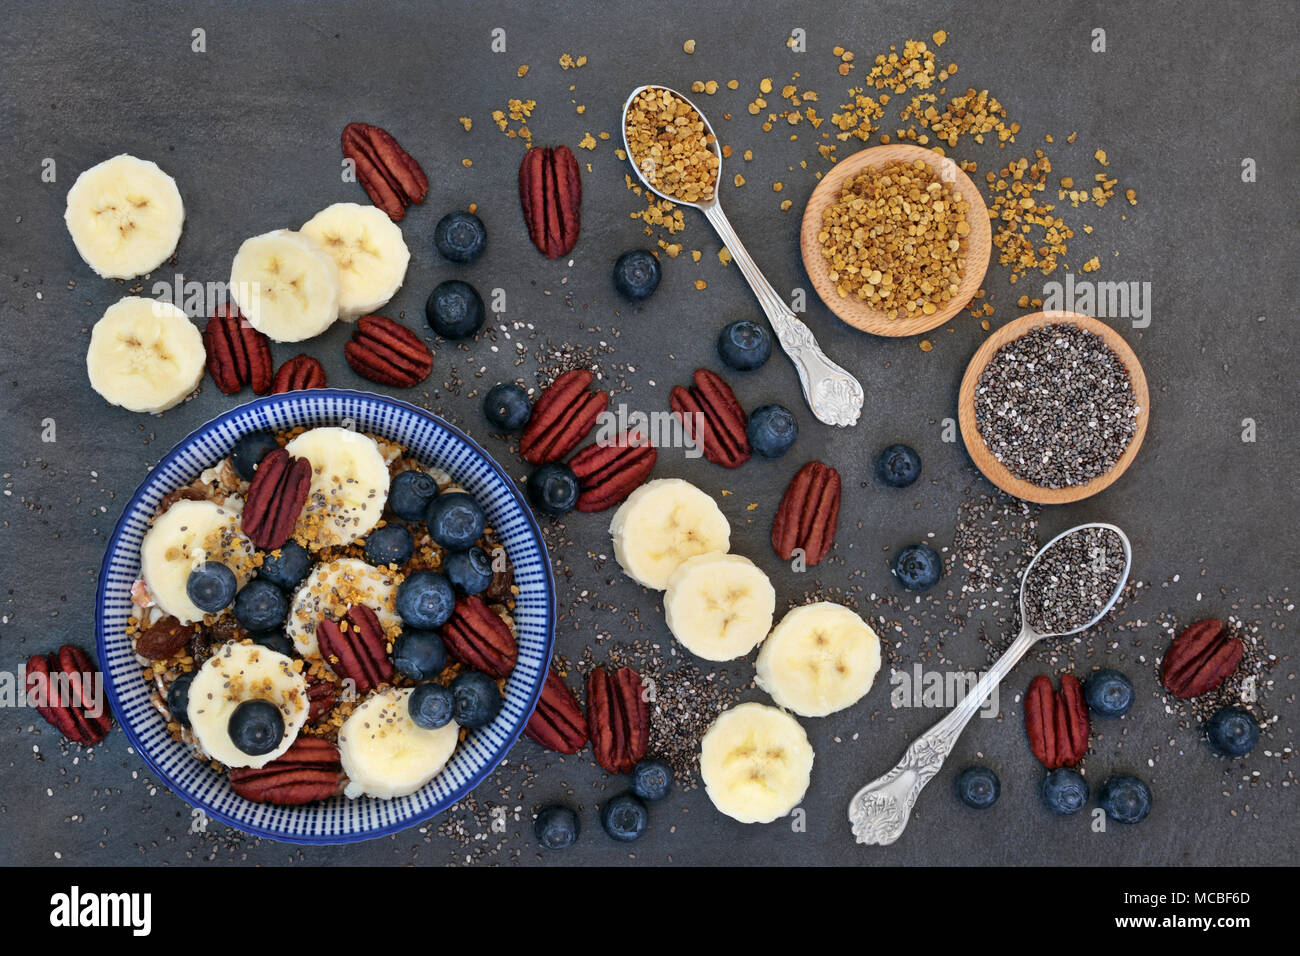 Pour le petit-déjeuner santé macrobiotique concept avec la banane, céréales, grains de pollen, des petits fruits, noix et graines de chia avec des aliments riches en protéines, o Banque D'Images